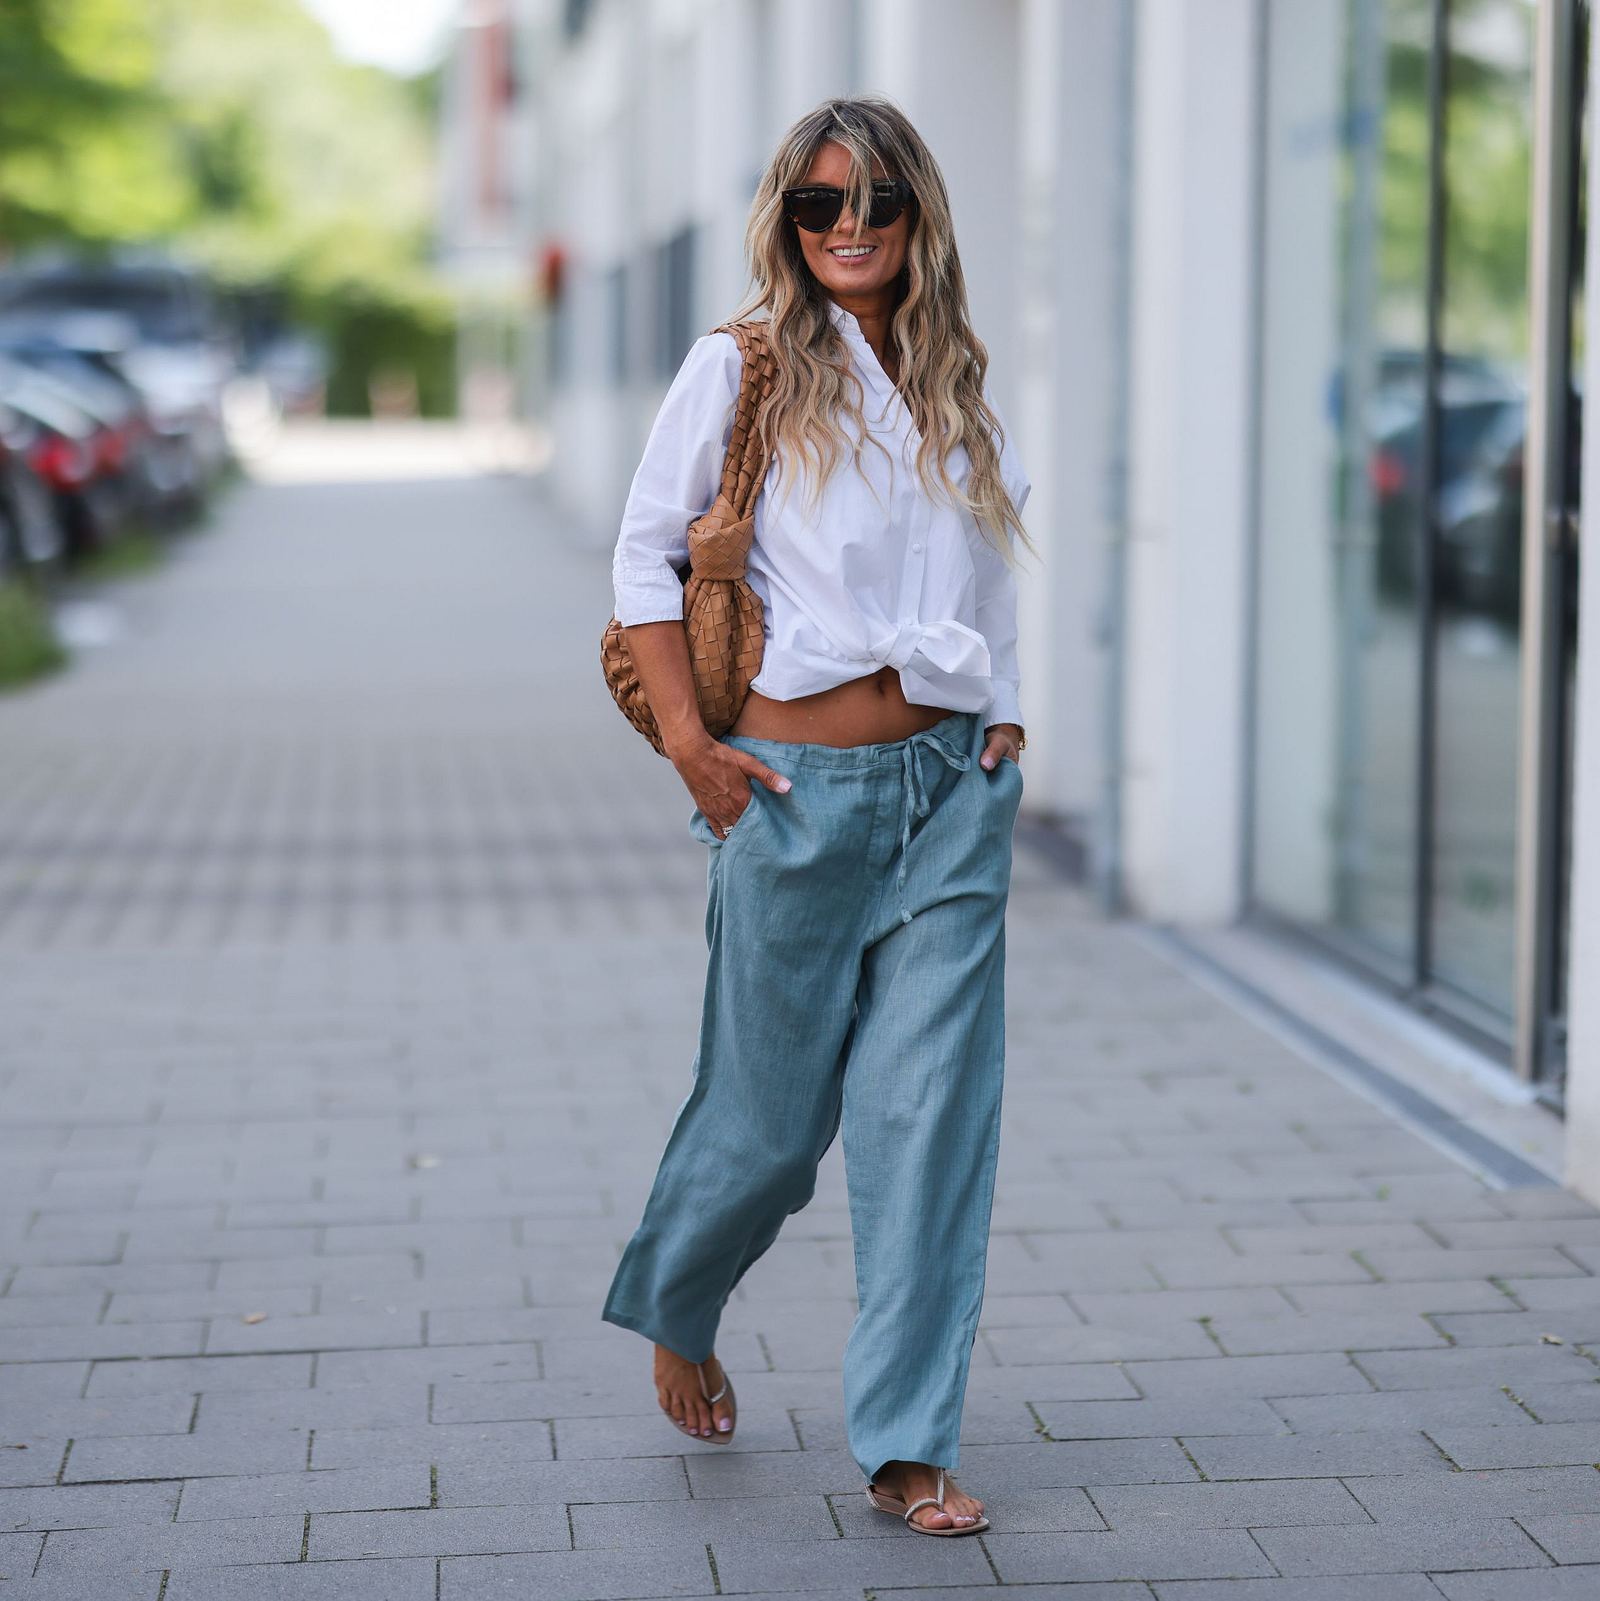 Blaue Hose kombinieren: Diese Outfit-Kombis liegen im Trend